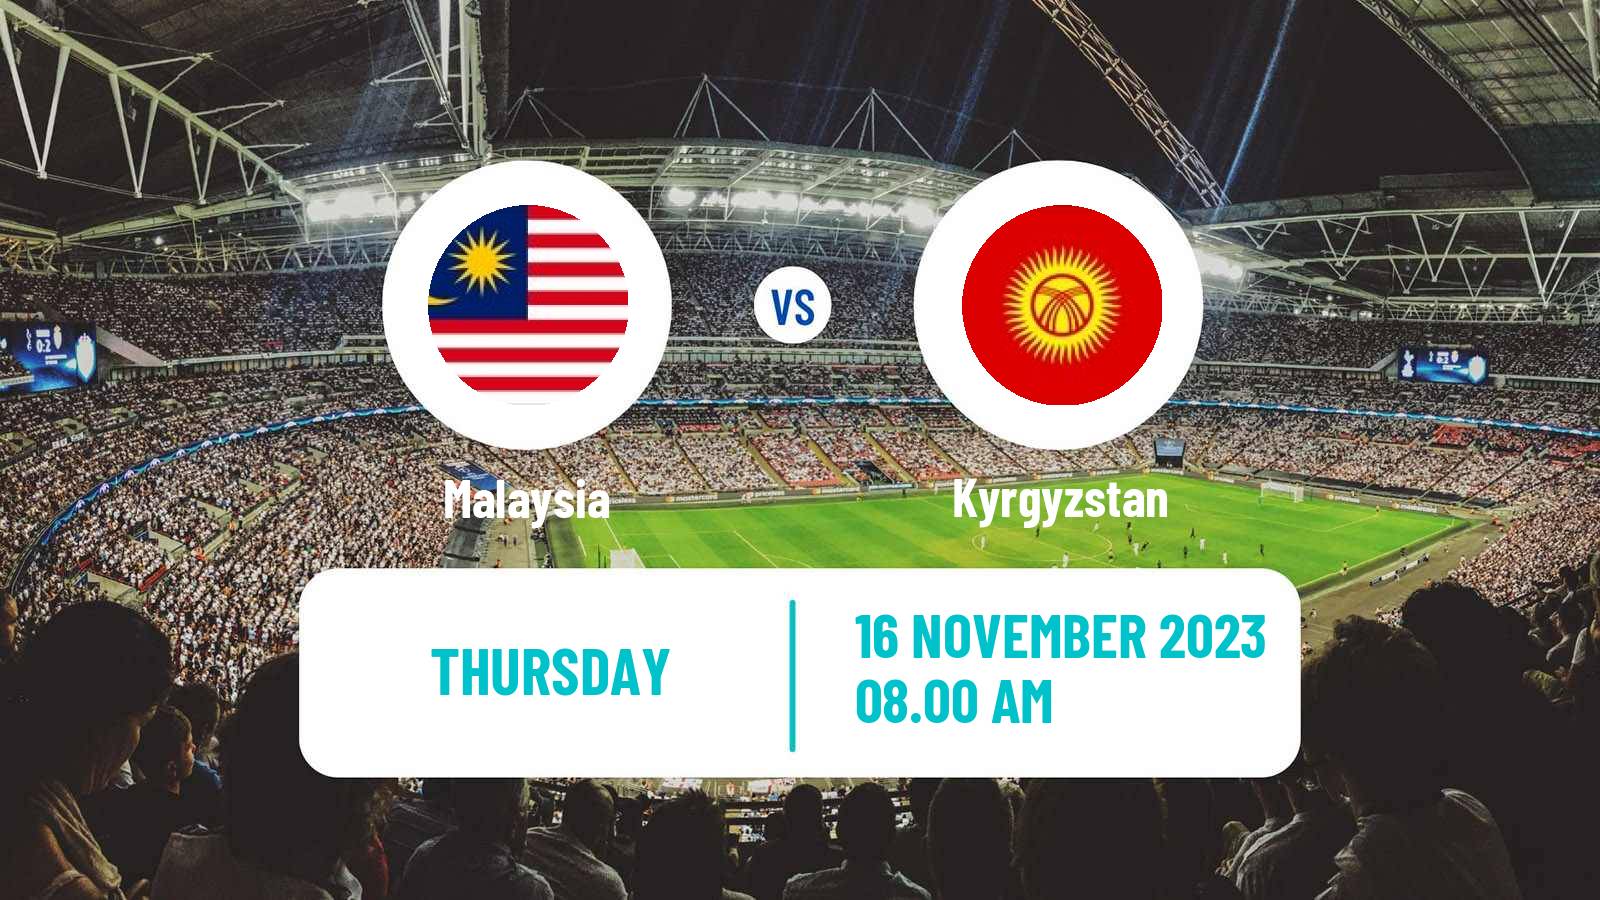 Soccer FIFA World Cup Malaysia - Kyrgyzstan